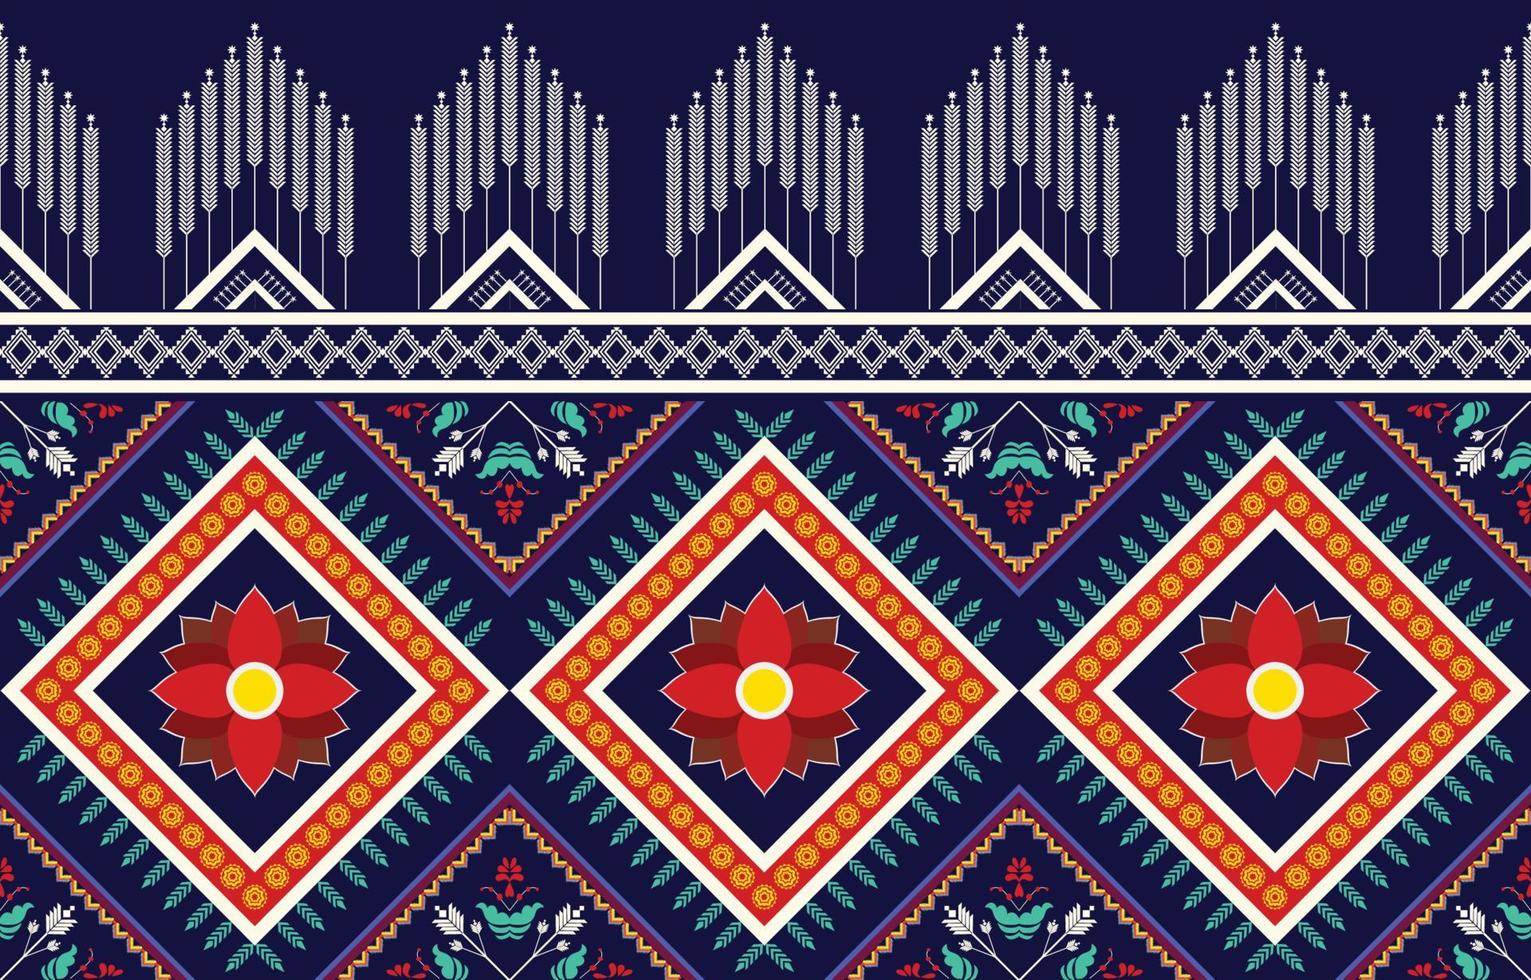 triângulo geométrico e padrão de ornamento de flores colorido, estilo de textura étnica tribal, design para impressão em produtos, plano de fundo, cachecol, roupas, embrulho, tecido, ilustração vetorial. vetor